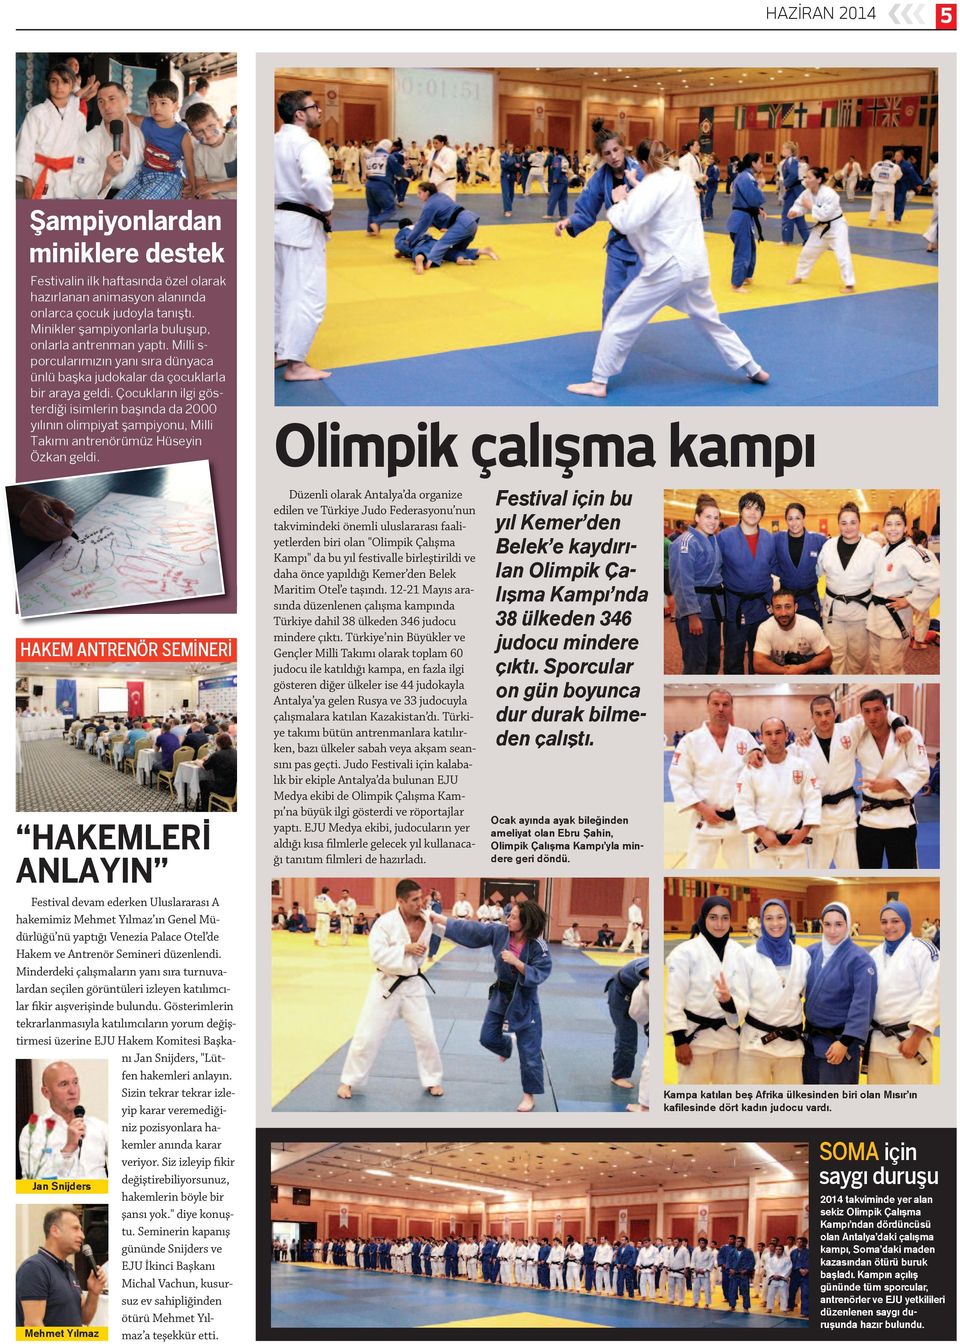 Çocukların ilgi gösterdiği isimlerin başında da 2000 yılının olimpiyat şampiyonu, Milli Takımı antrenörümüz Hüseyin Özkan geldi.